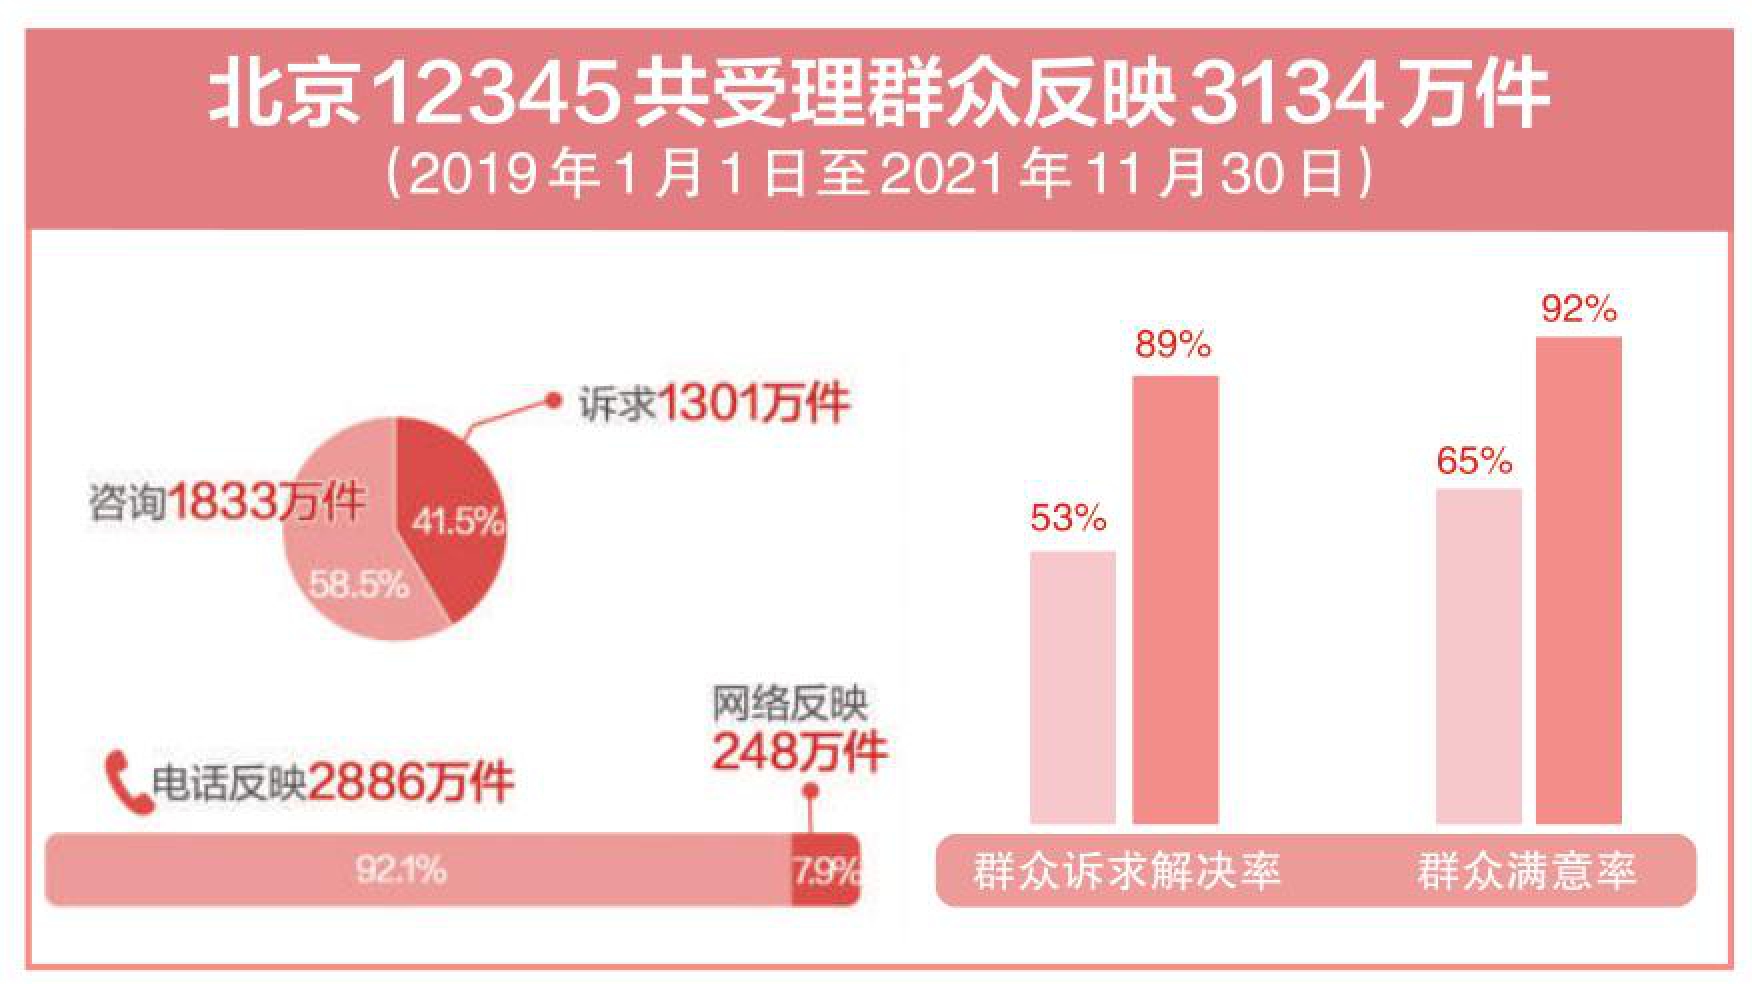 北京12345共受理群中反映3134万件